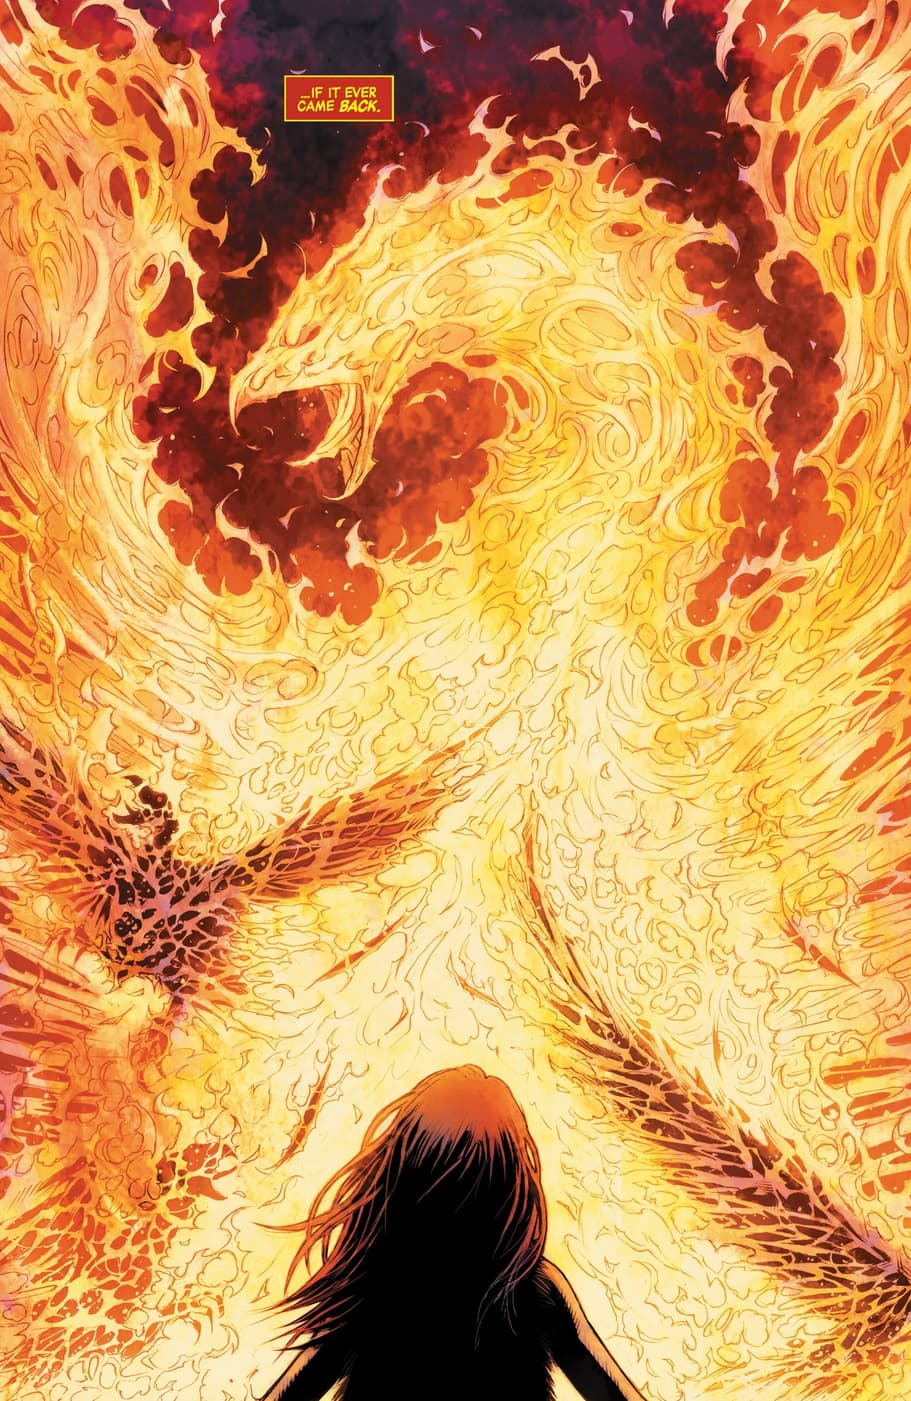 The Phoenix rises.